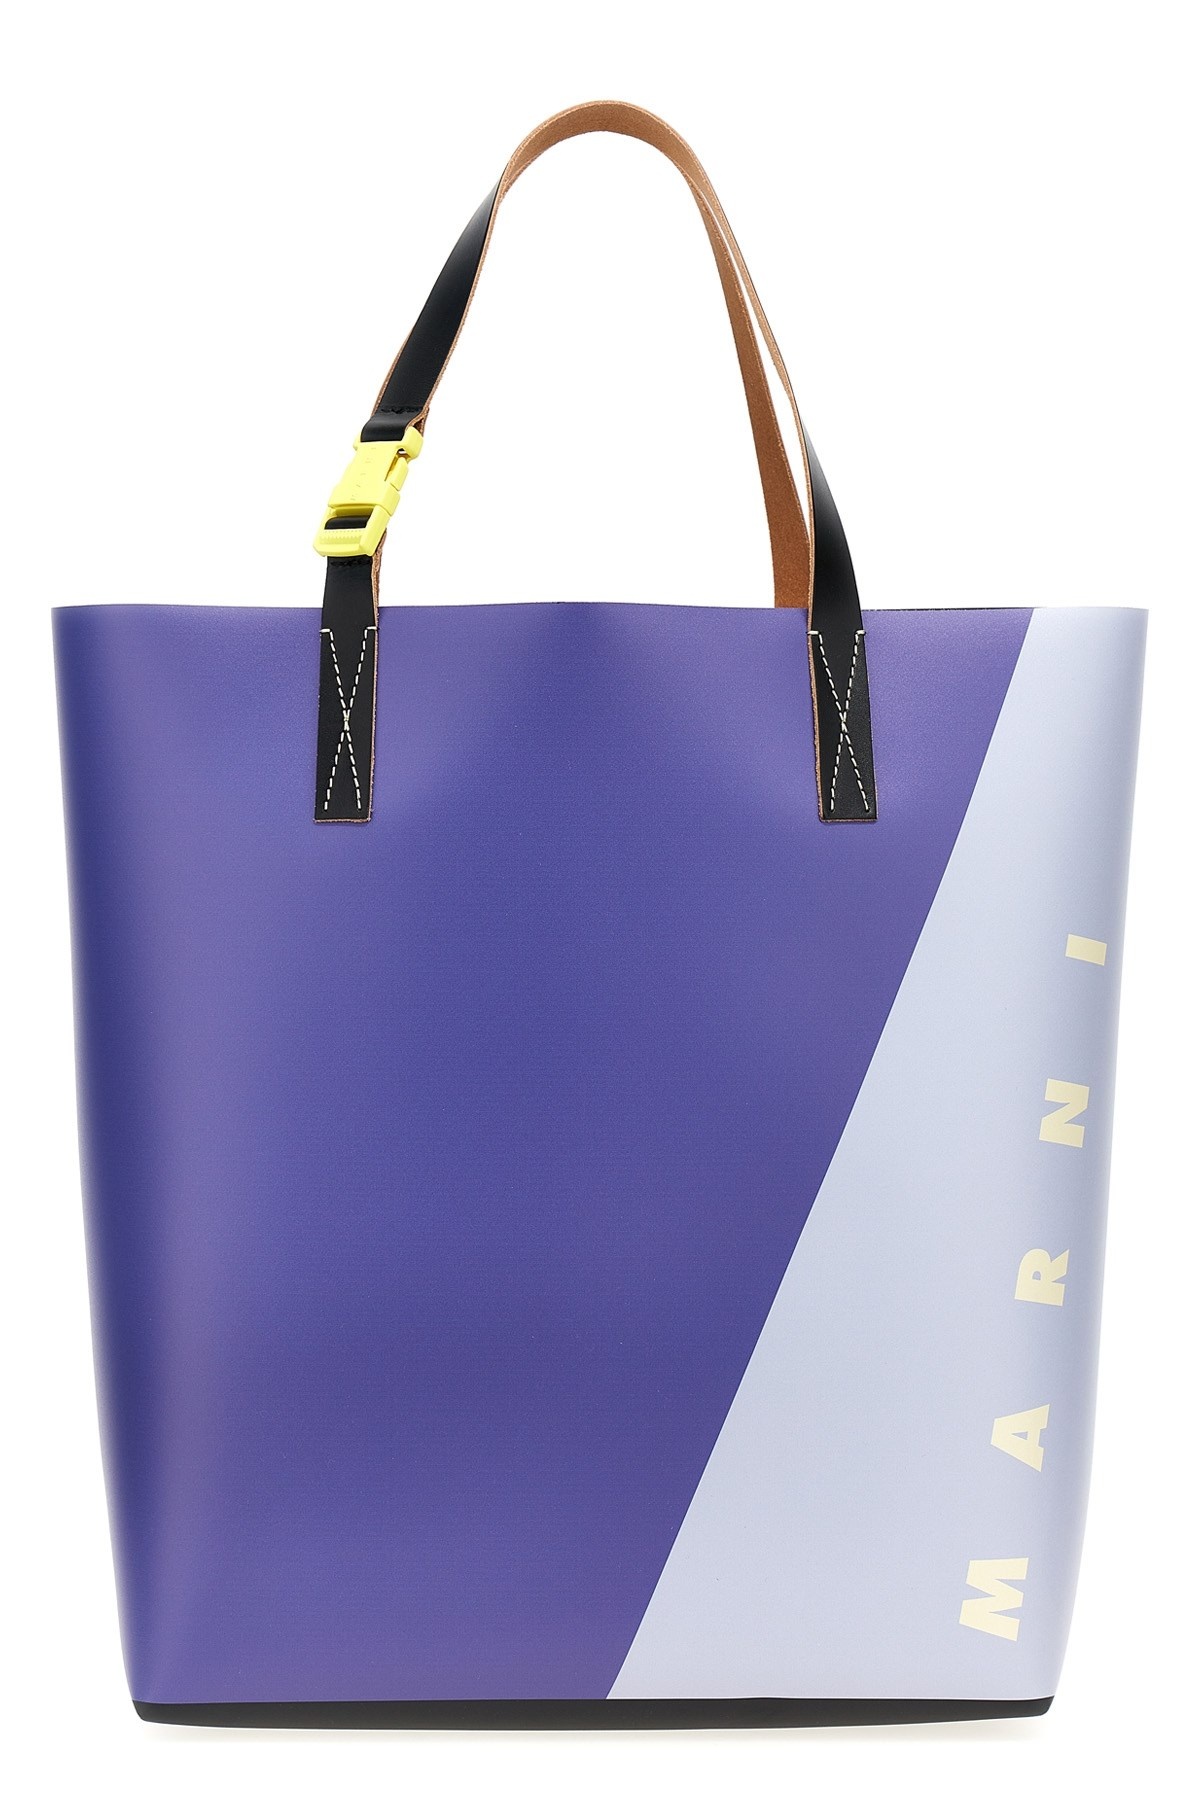 Logo shopping bag - 1